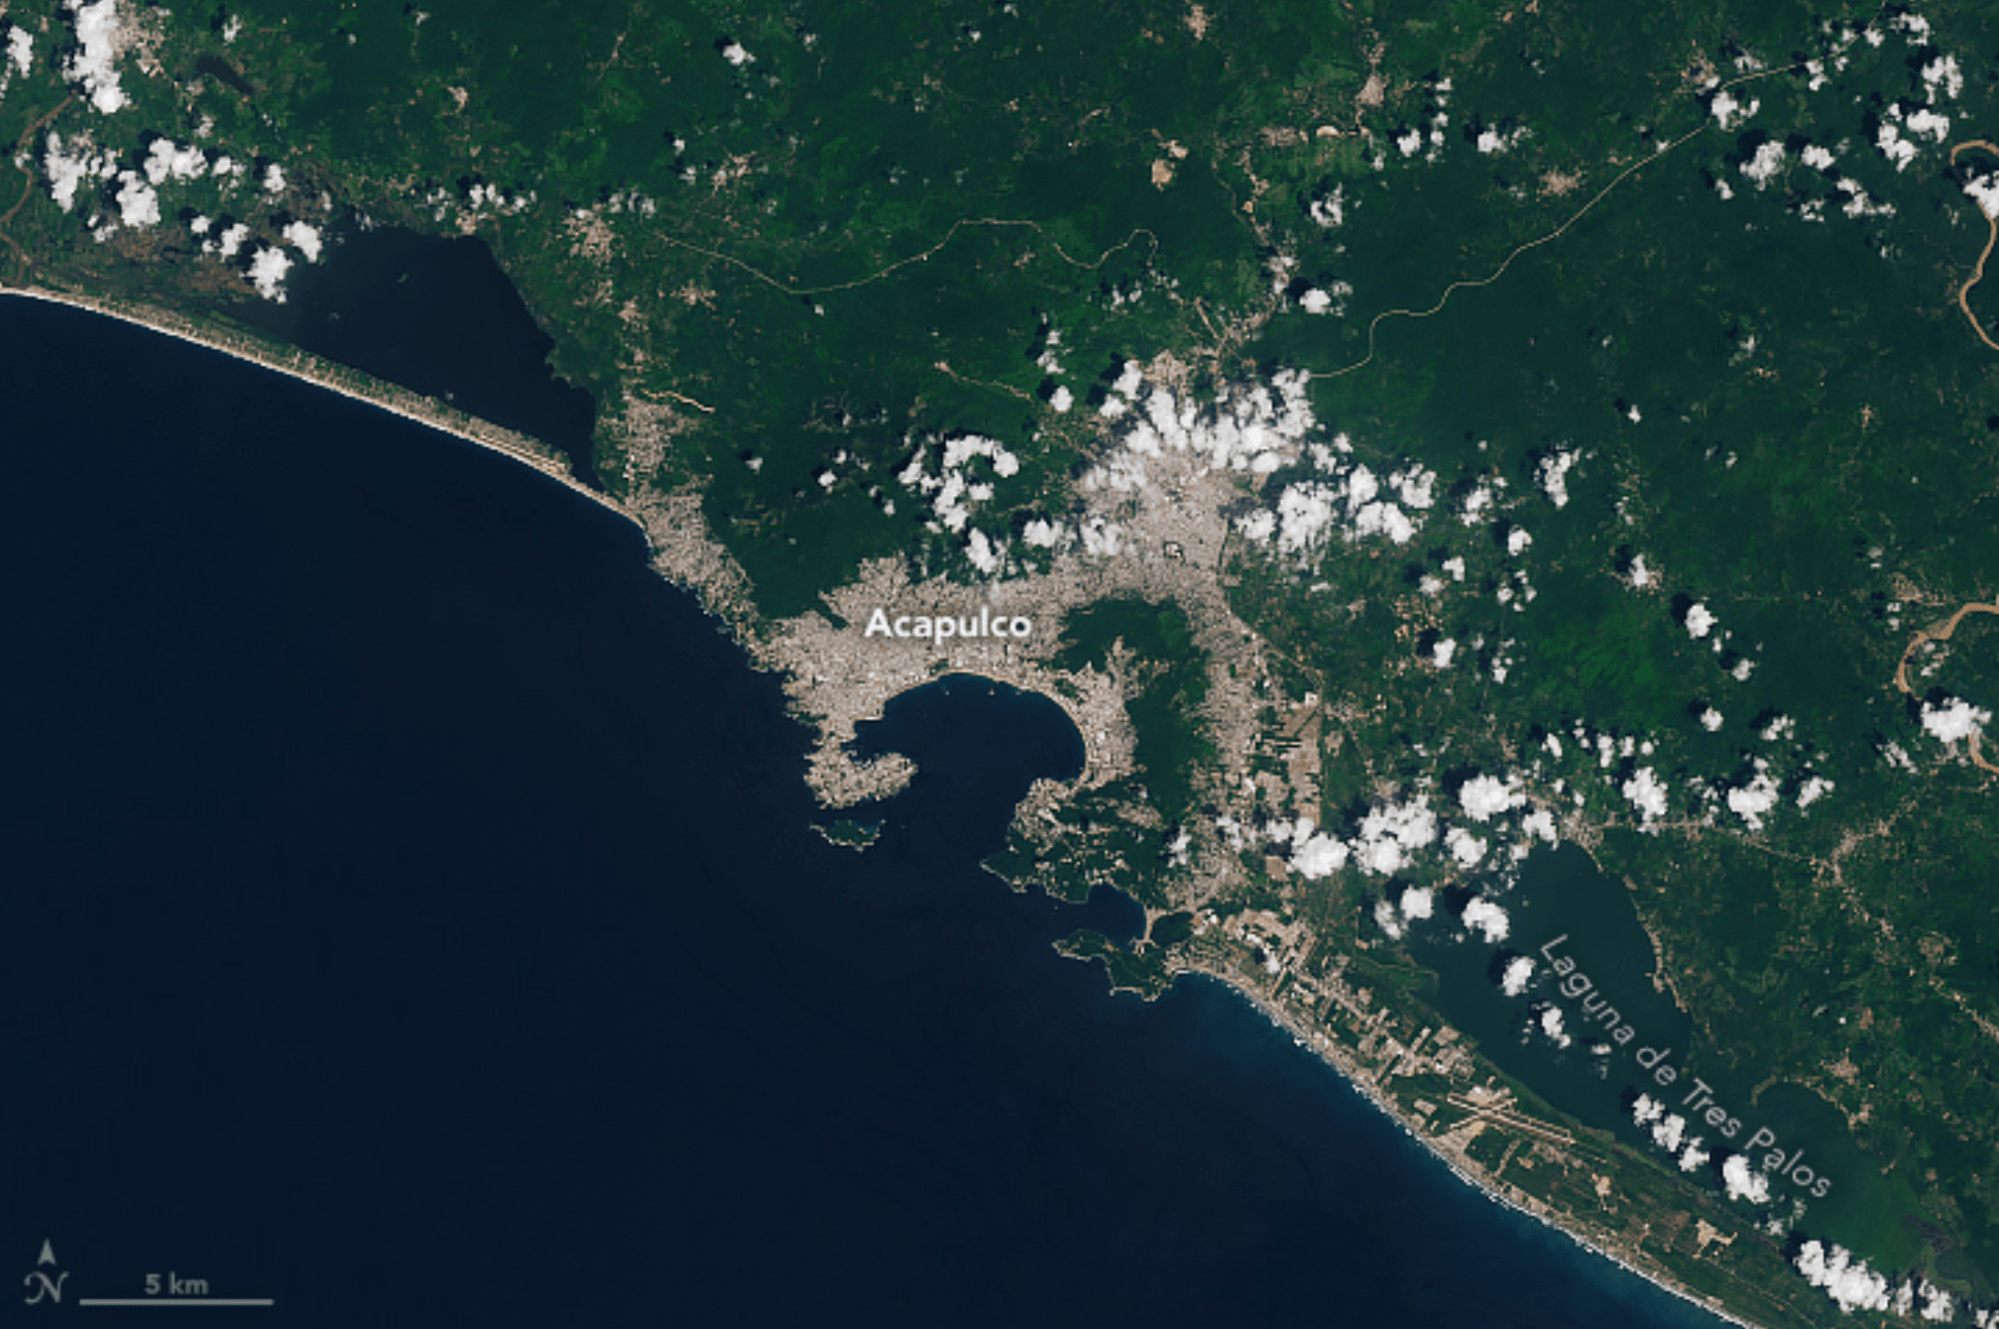 Esta imagen muestra la ciudad de Acapulco y sus alrededores antes del azote del huracán Otis. El sensor del Generador operacional de imágenes de tierra (OLI, por sus siglas en inglés) a bordo del satélite Landsat 8 adquirió la imagen el 21 de septiembre de 2023.